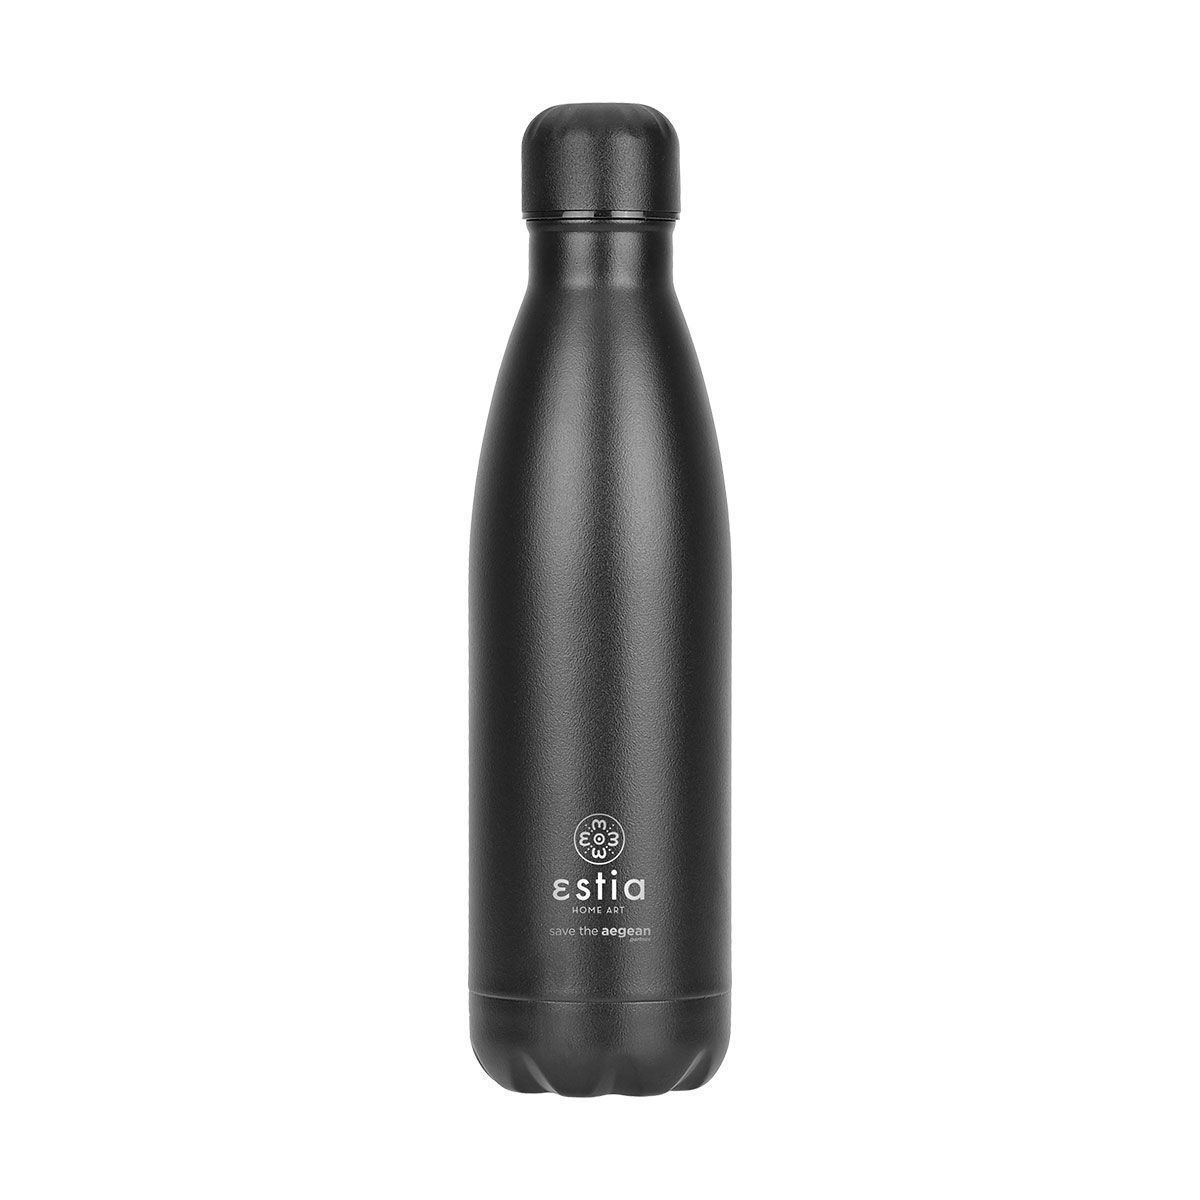 Θερμός-Μπουκάλι Ανοξείδωτο Flask Lite Save The Aegean Black Matte Estia 500ml-7x7x26,6εκ. 01-17989 (Υλικό: Ανοξείδωτο, Χρώμα: Μαύρο) – estia – 01-17989